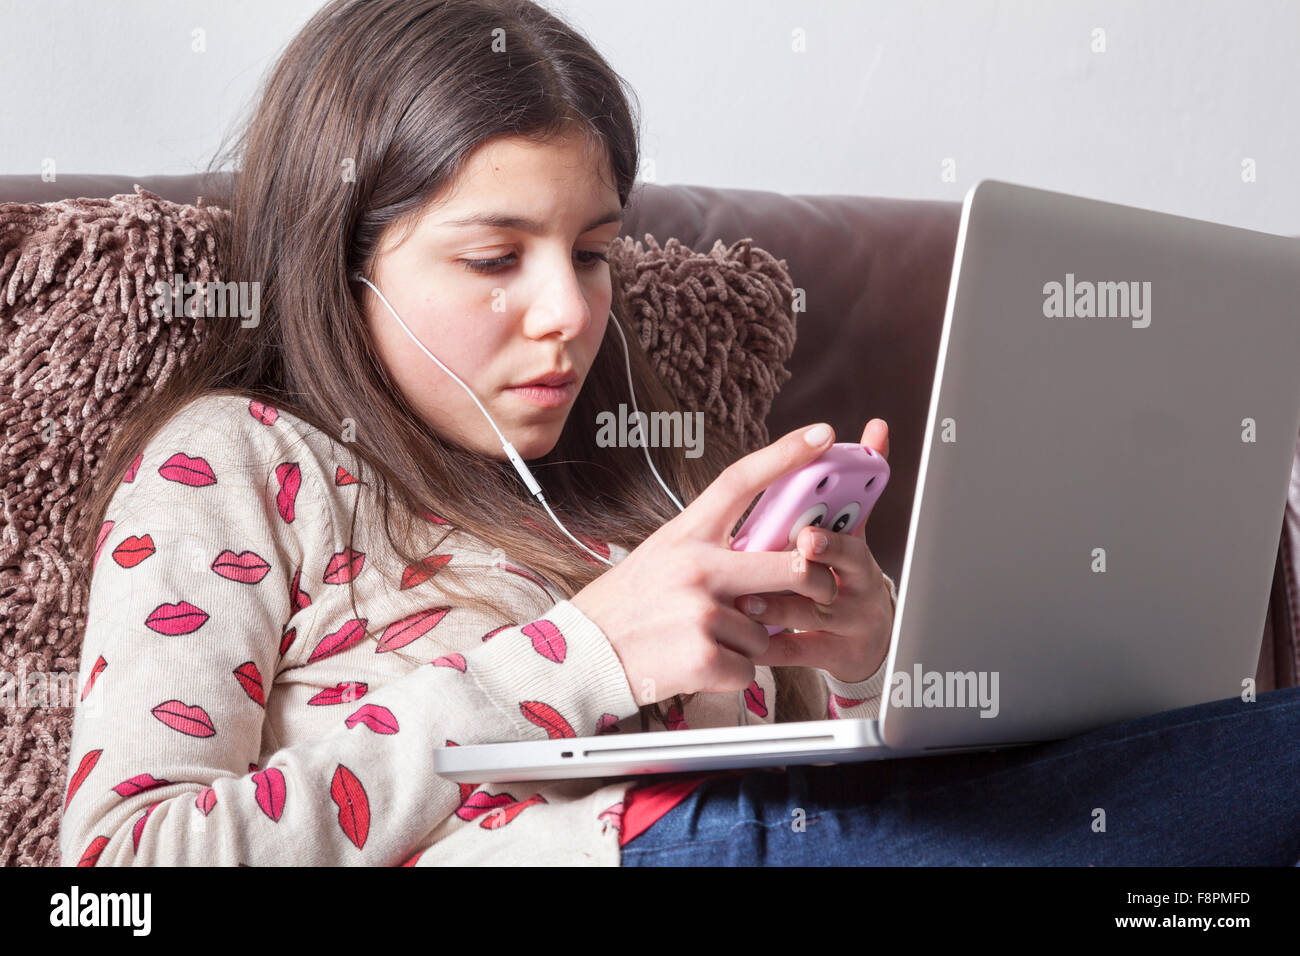 Adolescente,12-13,chateando en el ordenador Foto de stock